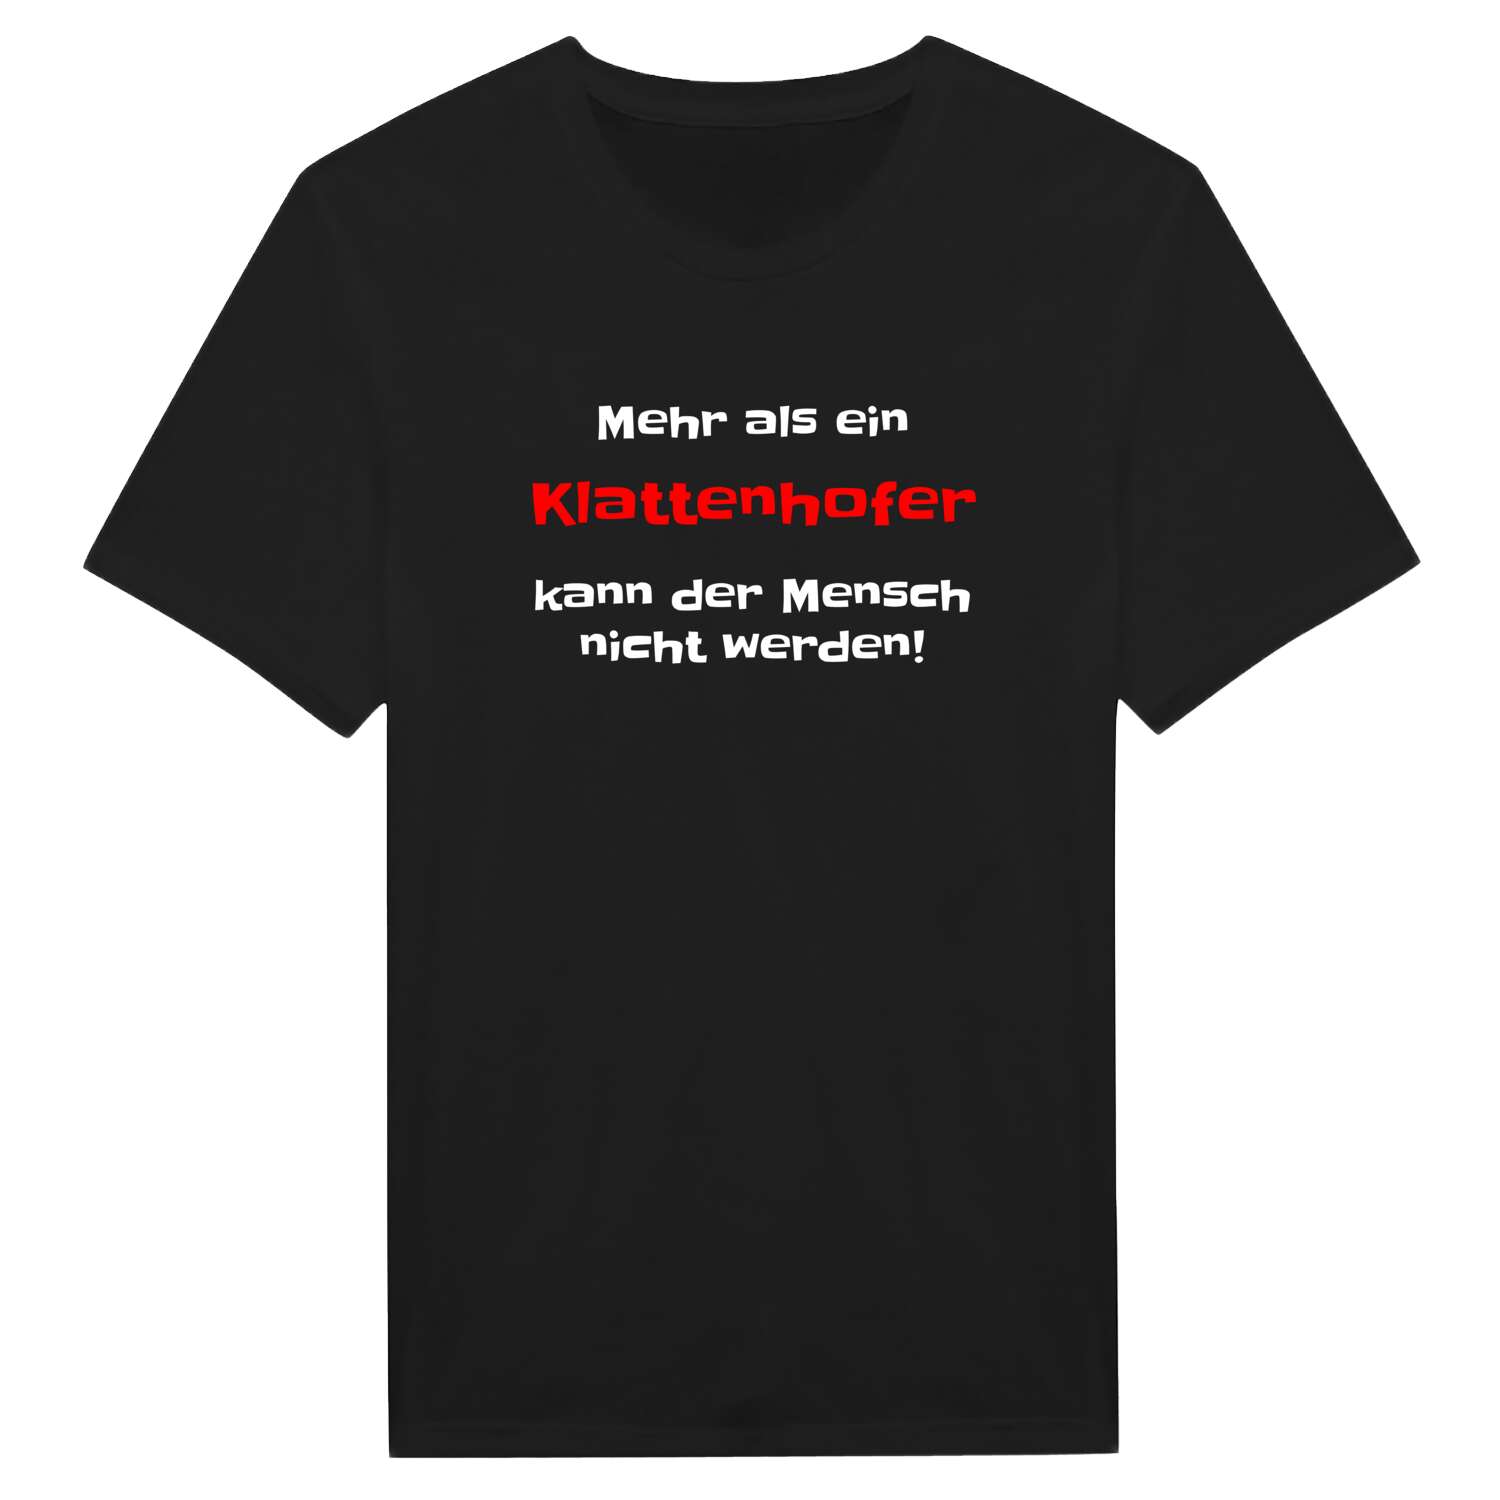 Klattenhof T-Shirt »Mehr als ein«